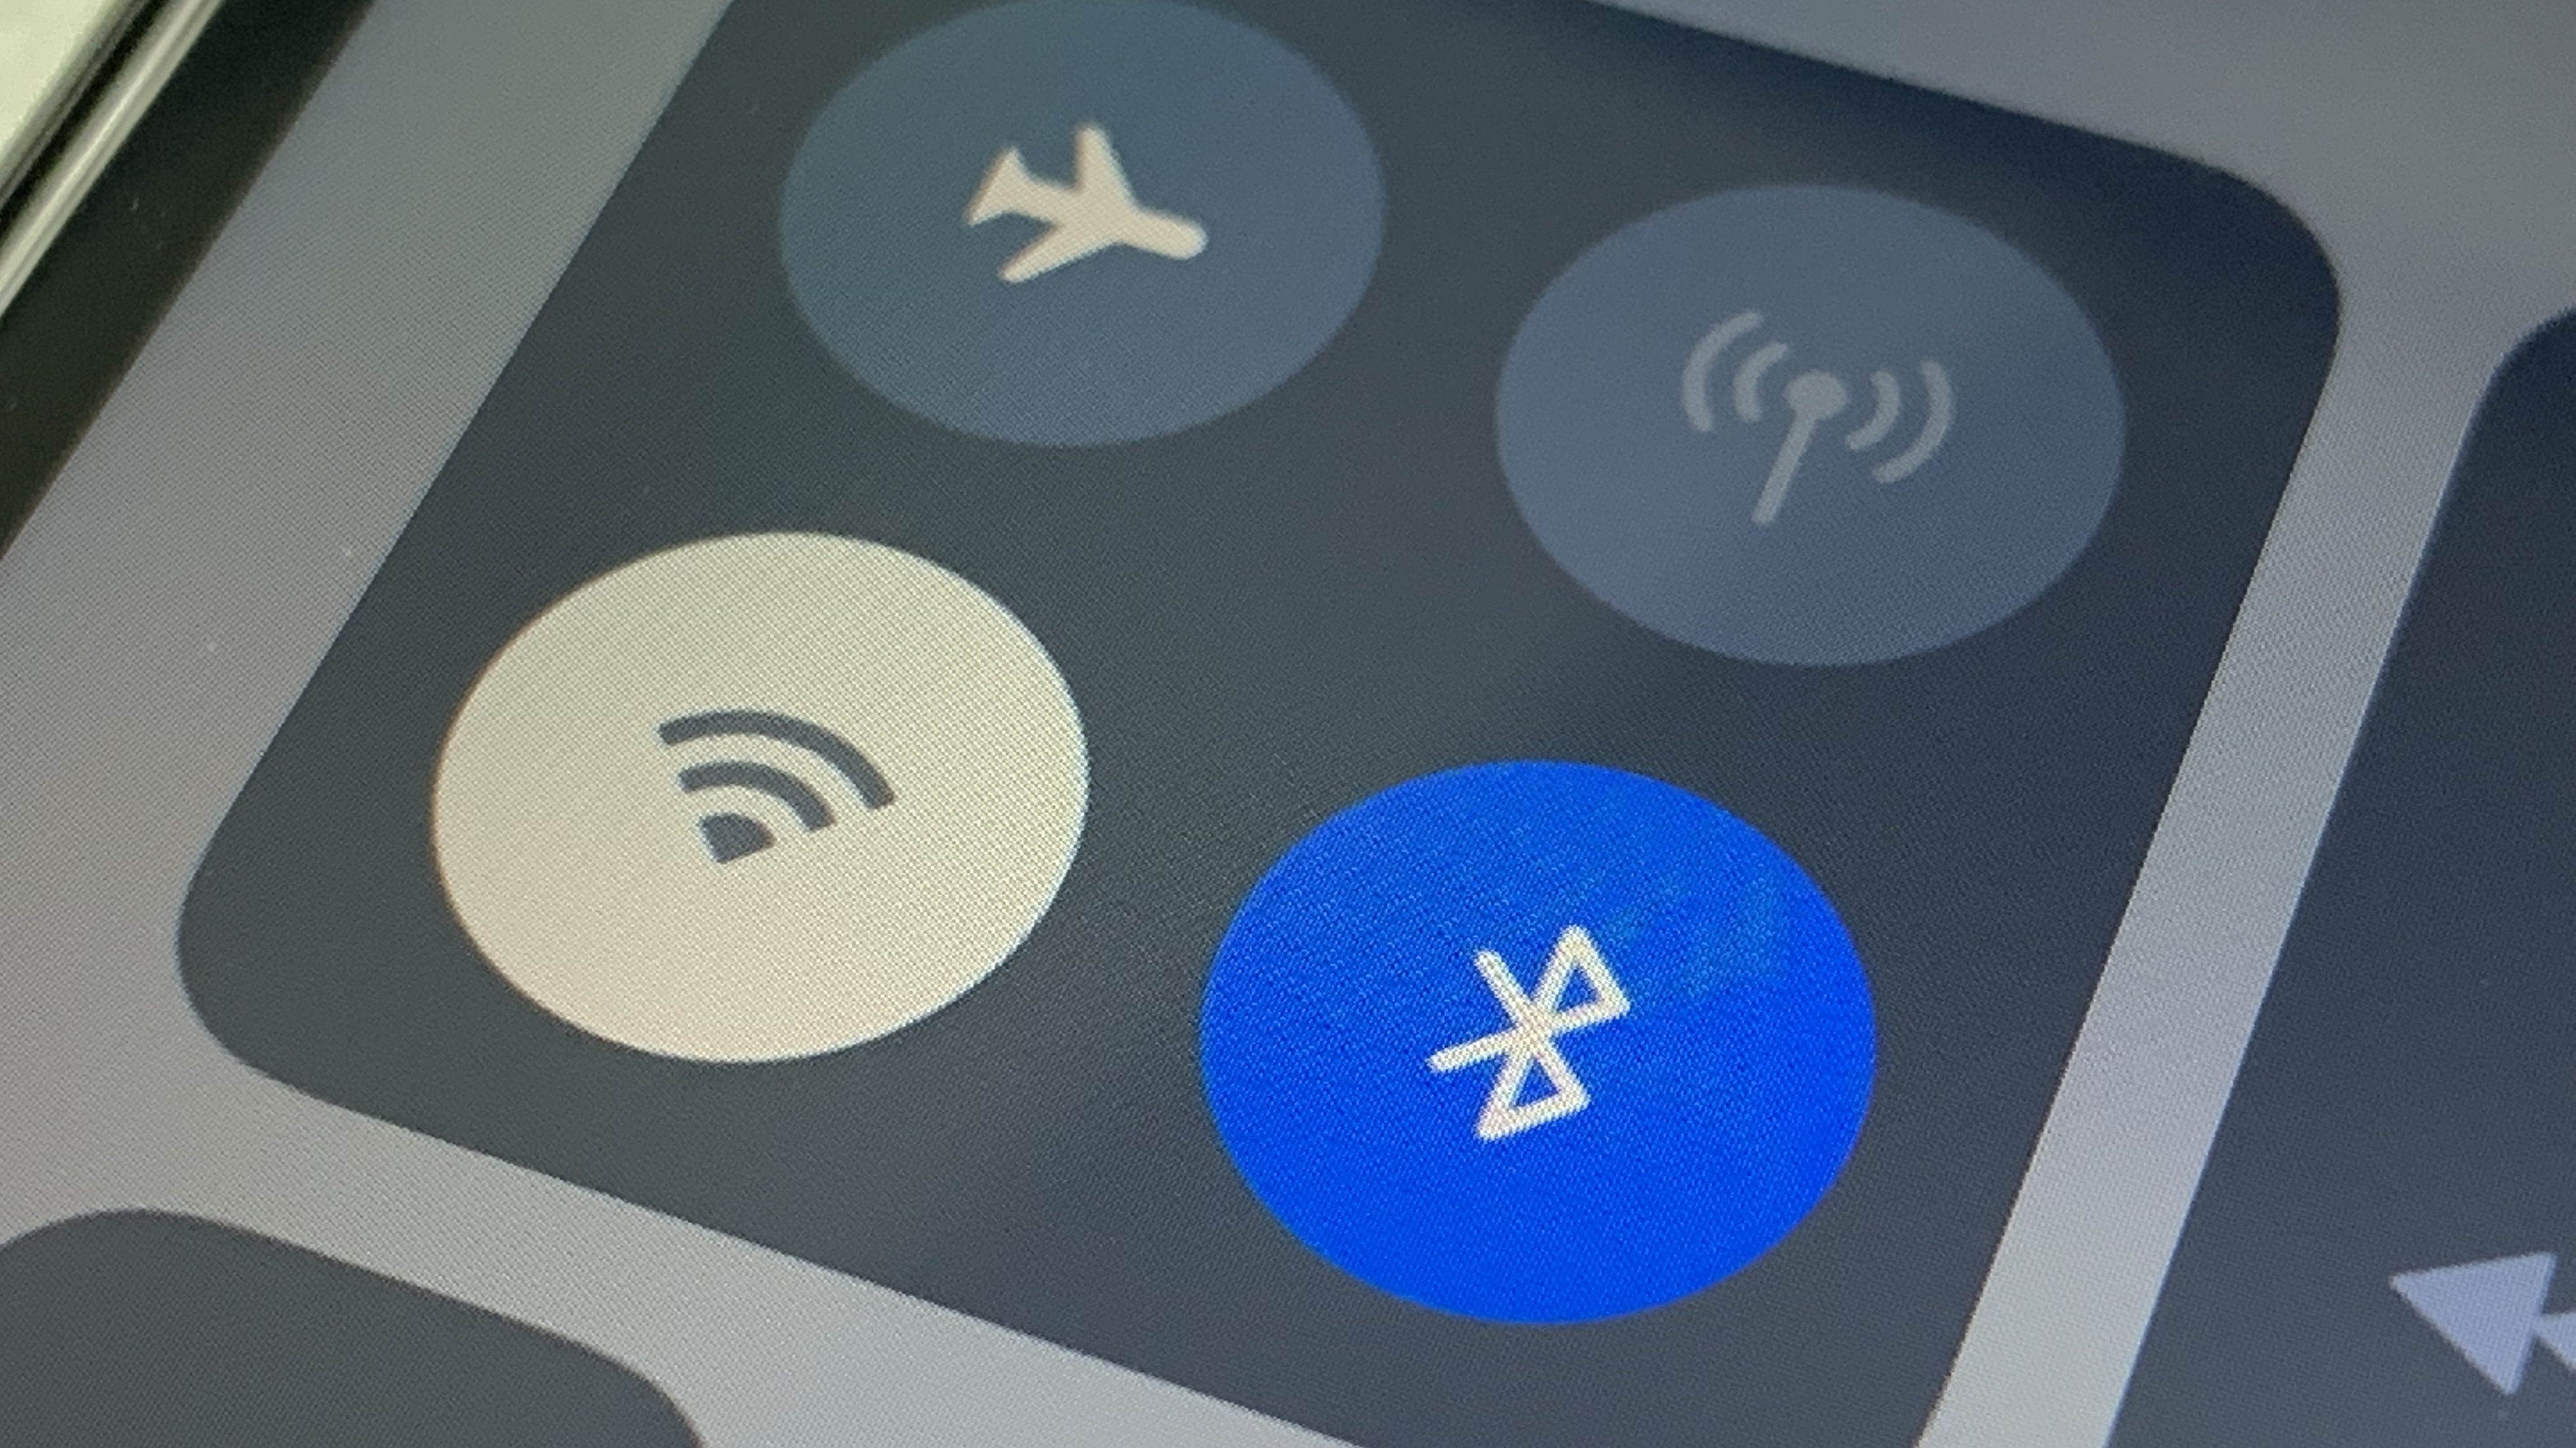 Bluetooth im Flugzeug - was ist erlaubt? | heise online